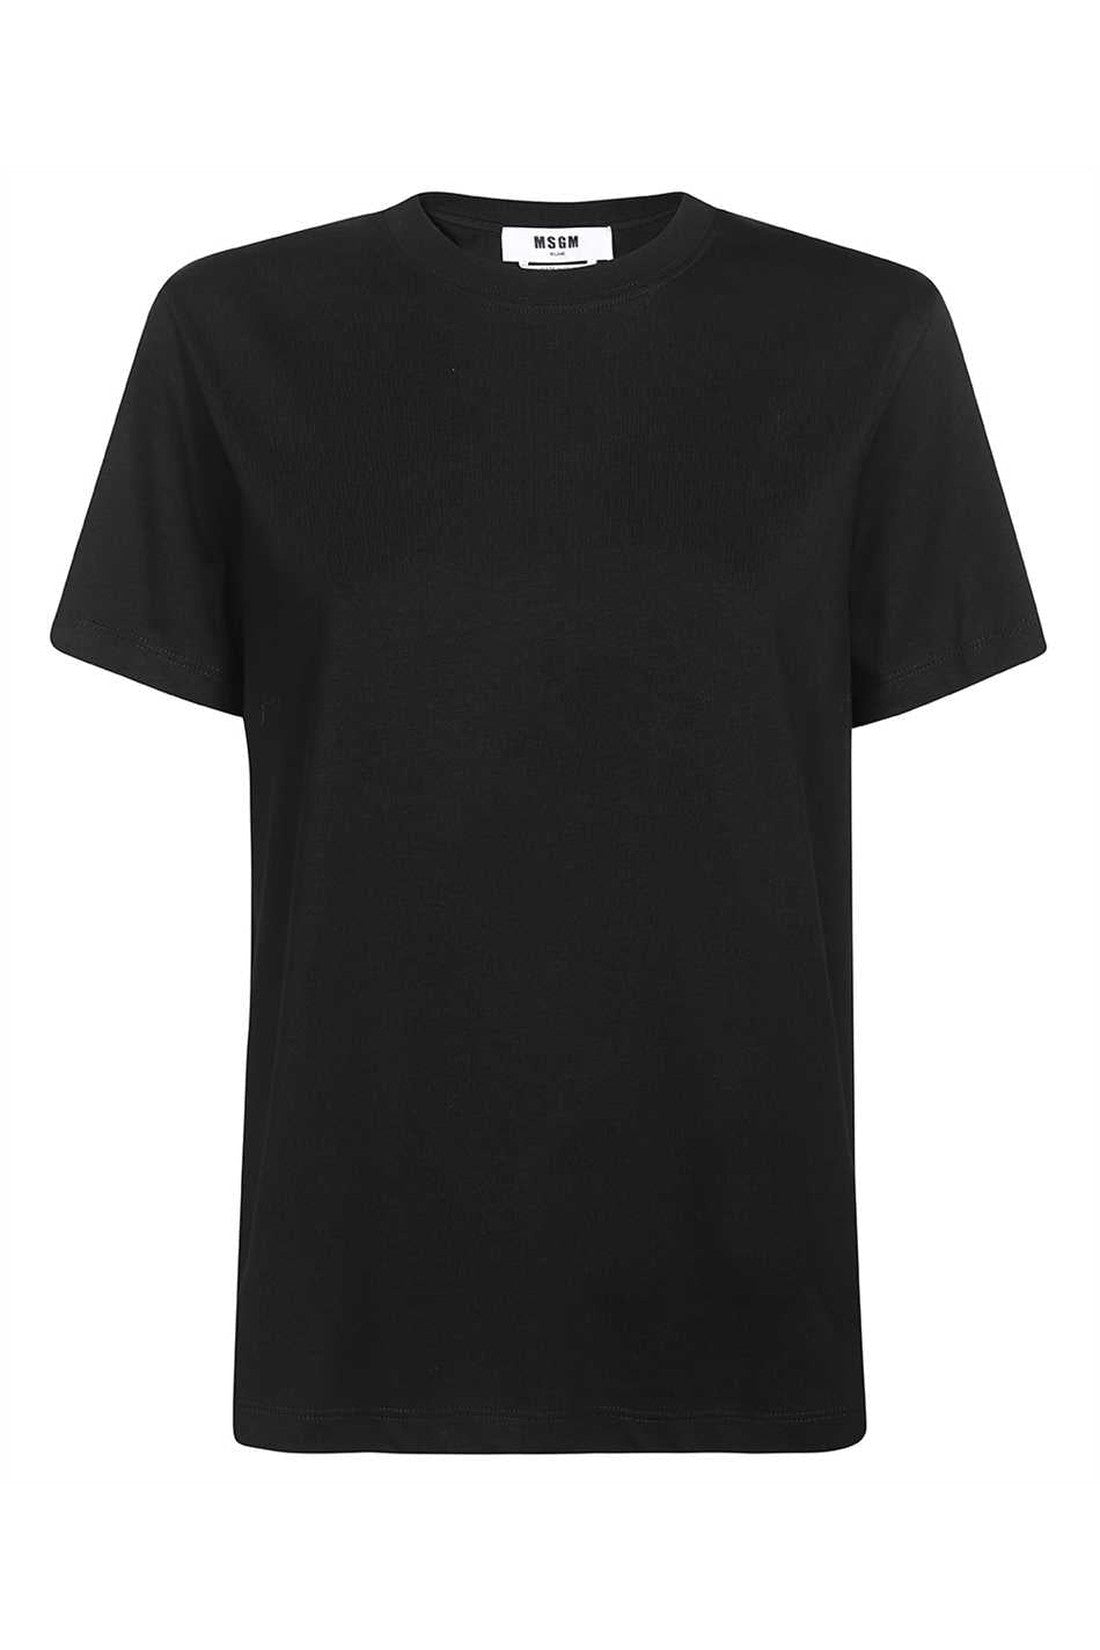 Printed cotton T-shirt-MSGM-OUTLET-SALE-M-ARCHIVIST